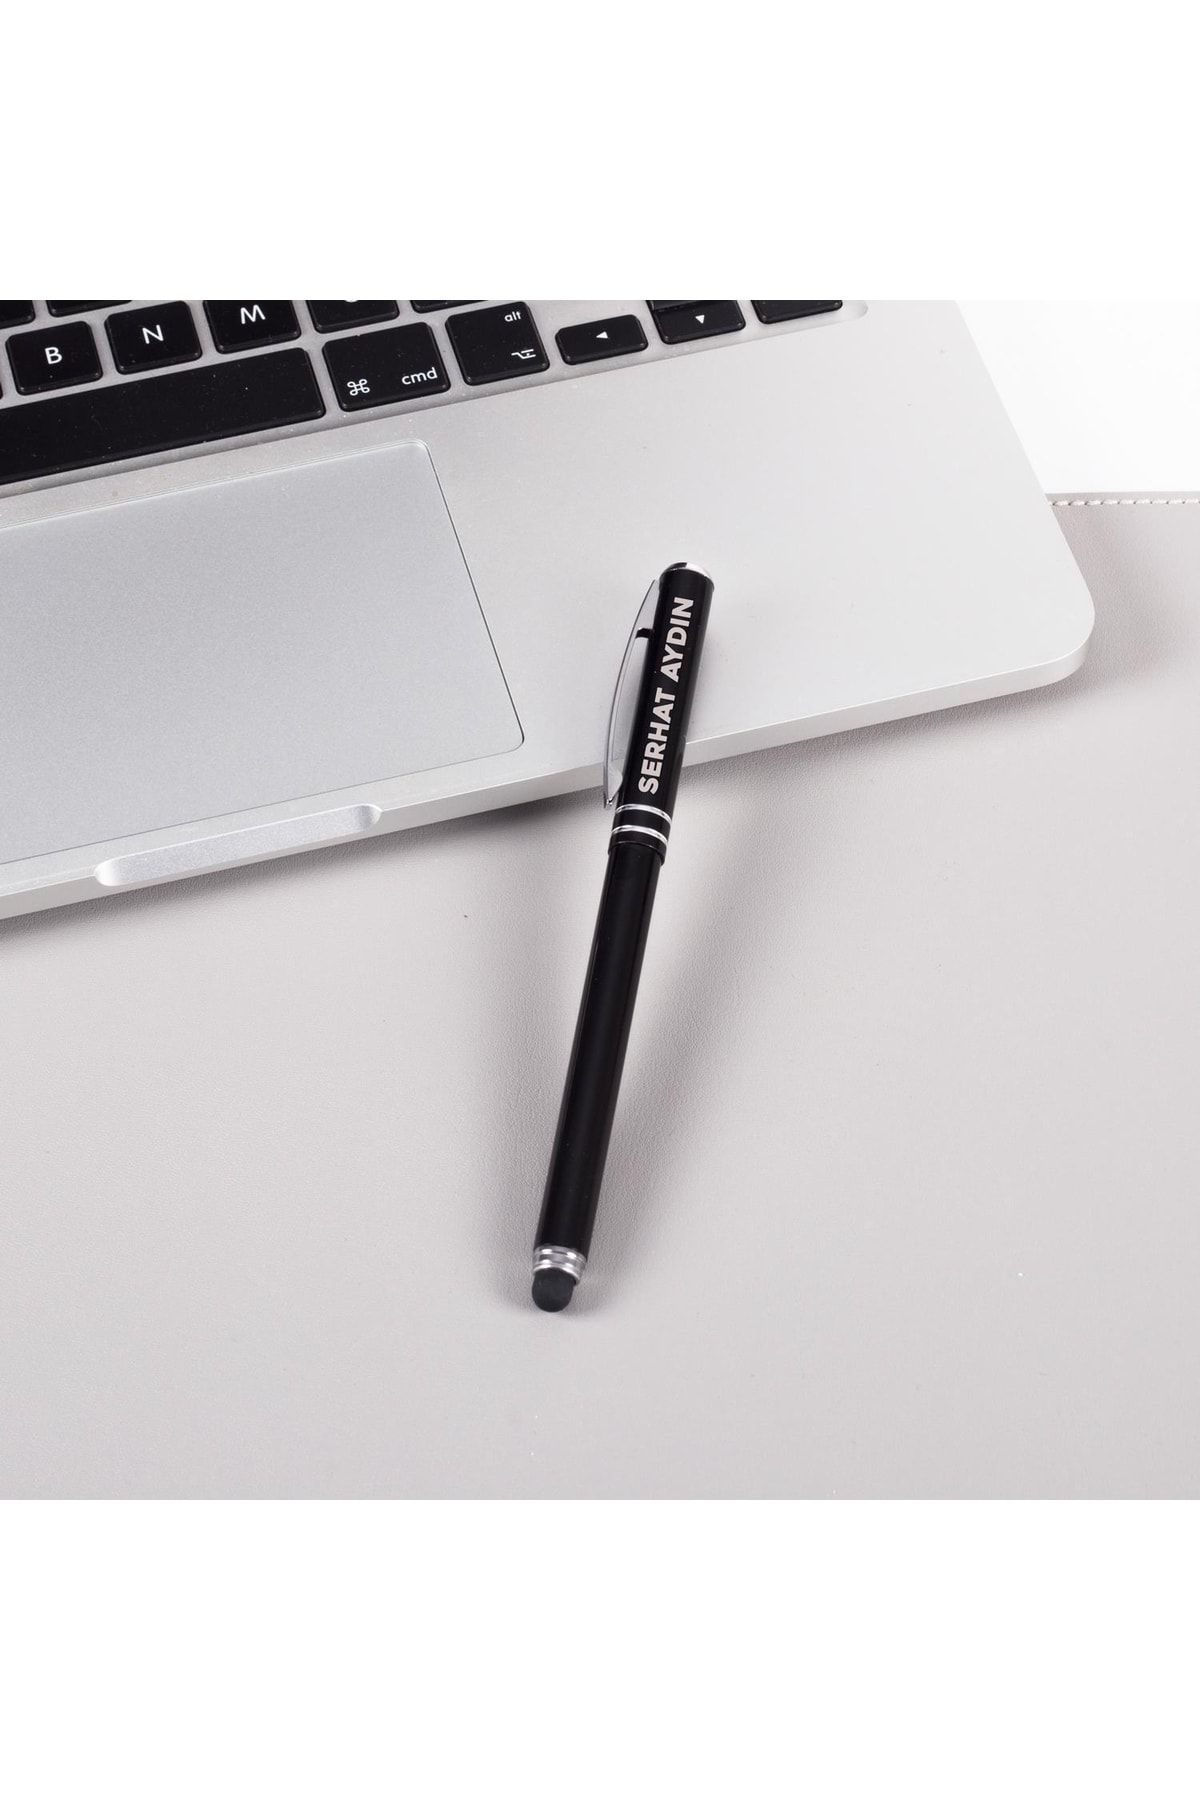 Ofistike Kişiye Ve Isme Özel Isim Yazılı Kutulu Touch Pen Özellikli Tükenmez Kalem